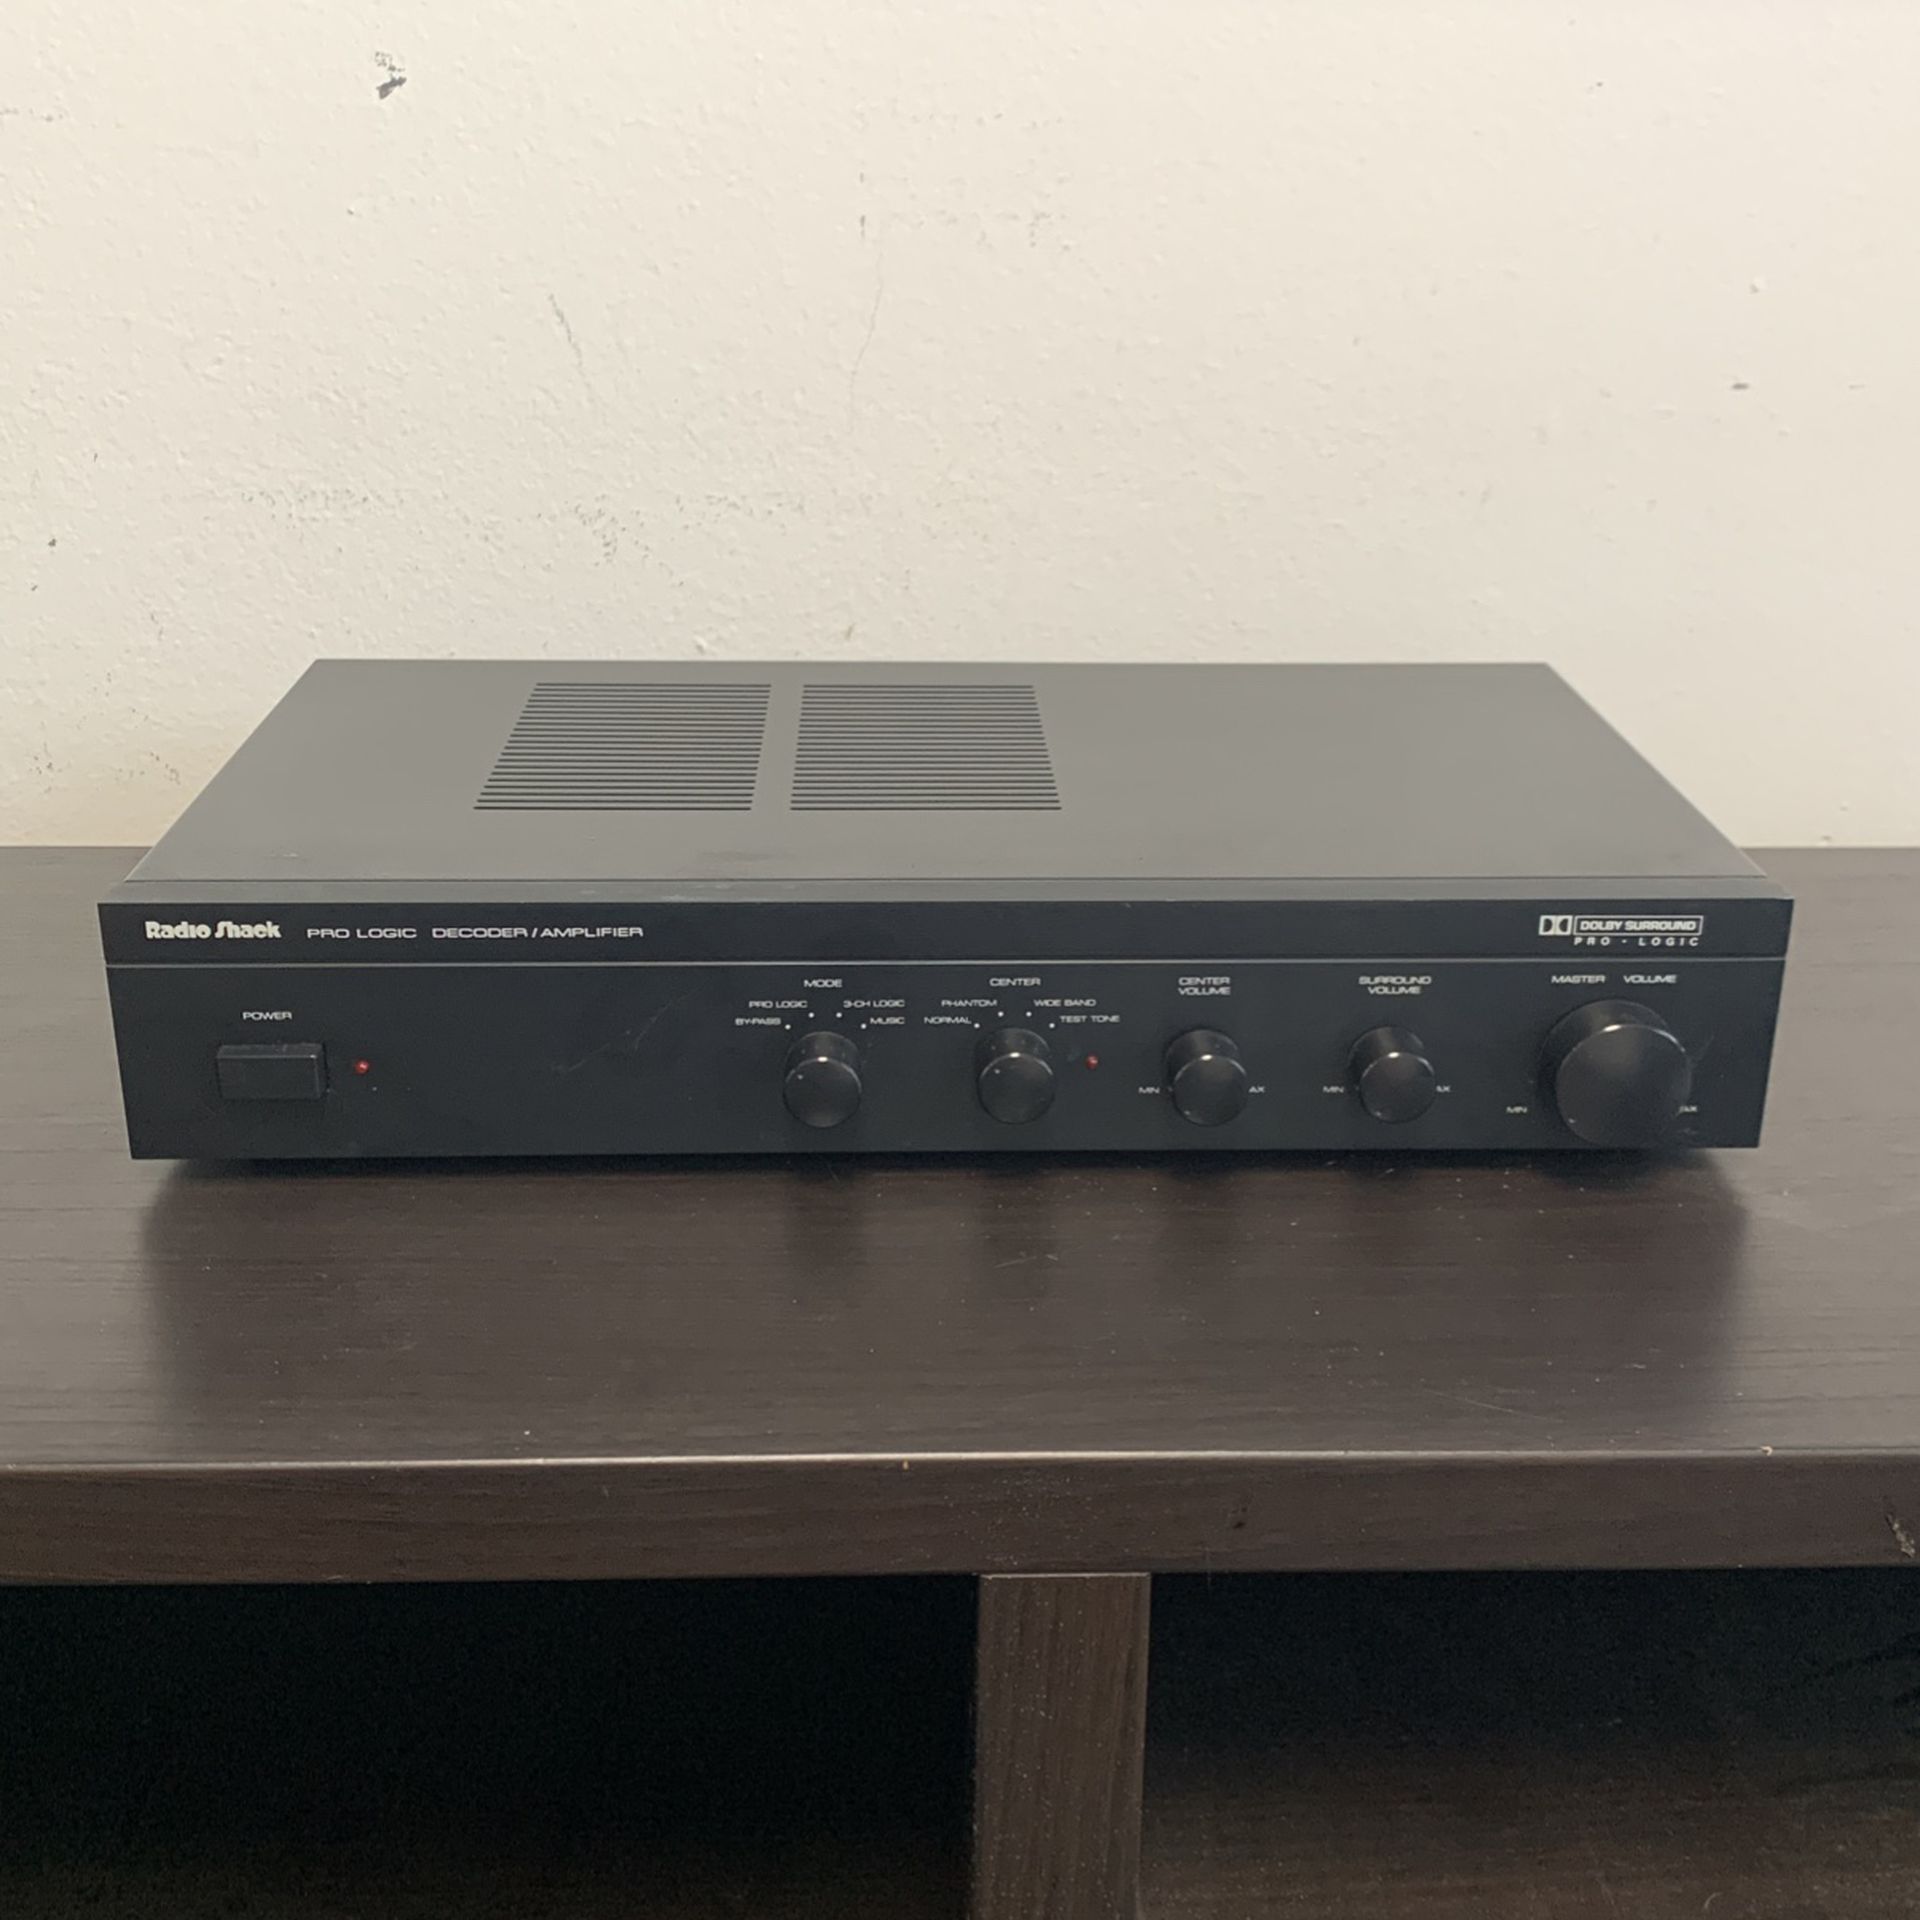 Vintage Pro-logic Surround Sound Decoder/amp (1993)